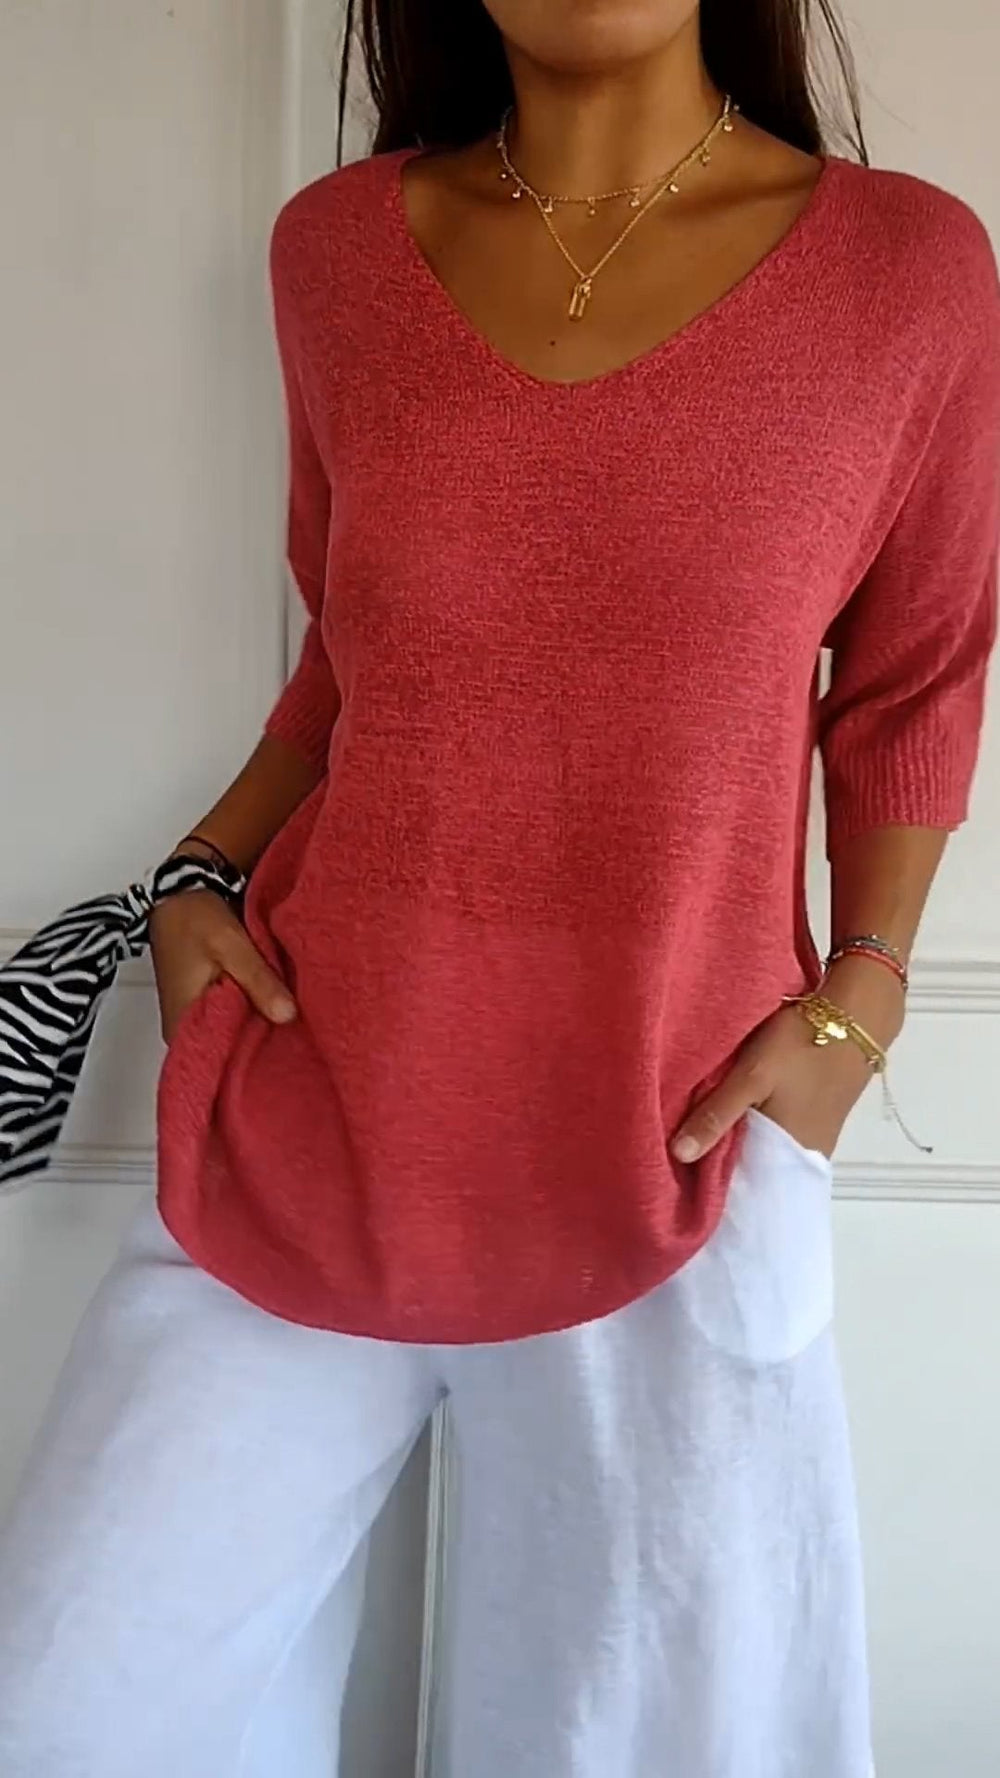 Amelia - Solid color knit top with V-neckline